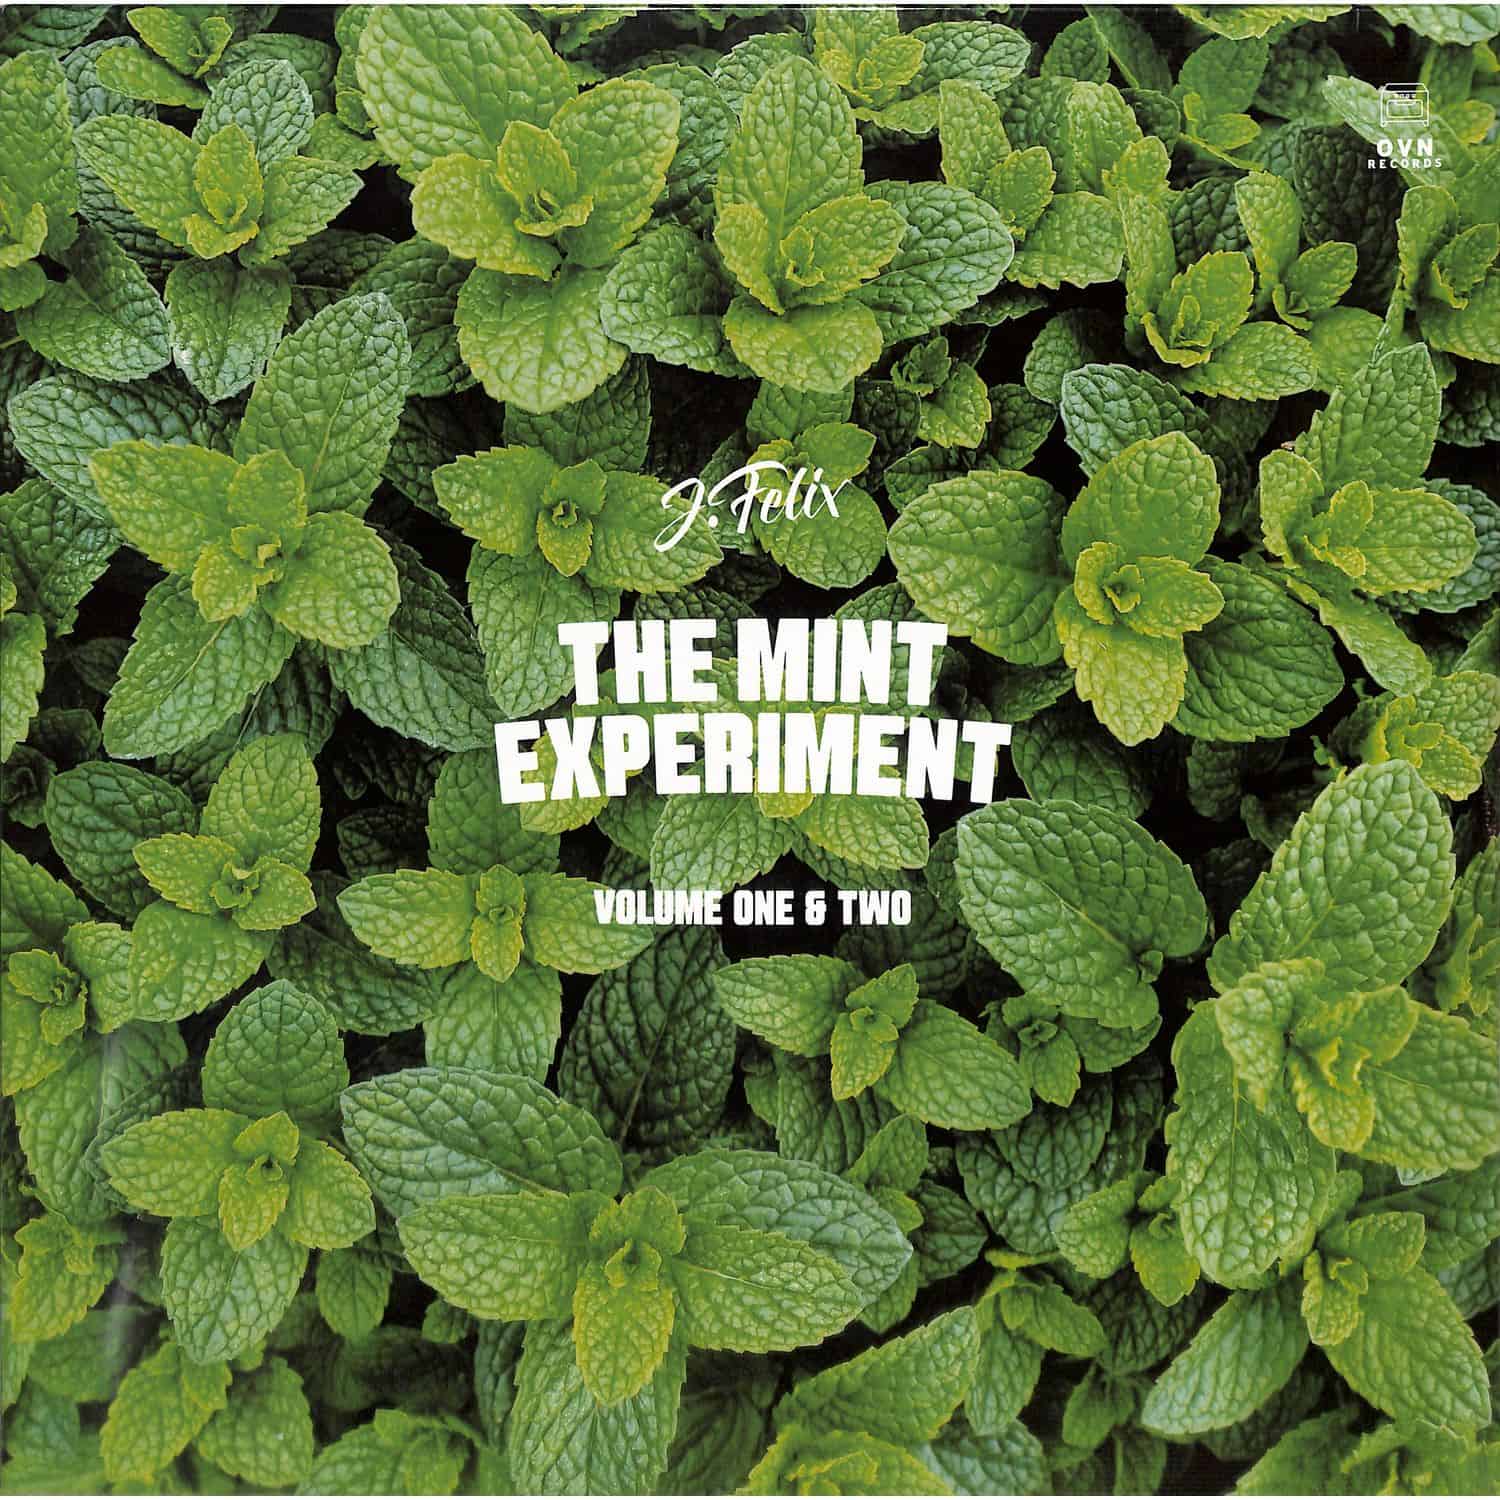 J-Felix - THE MINT EXPERIMENT VOLUME 1 & 2